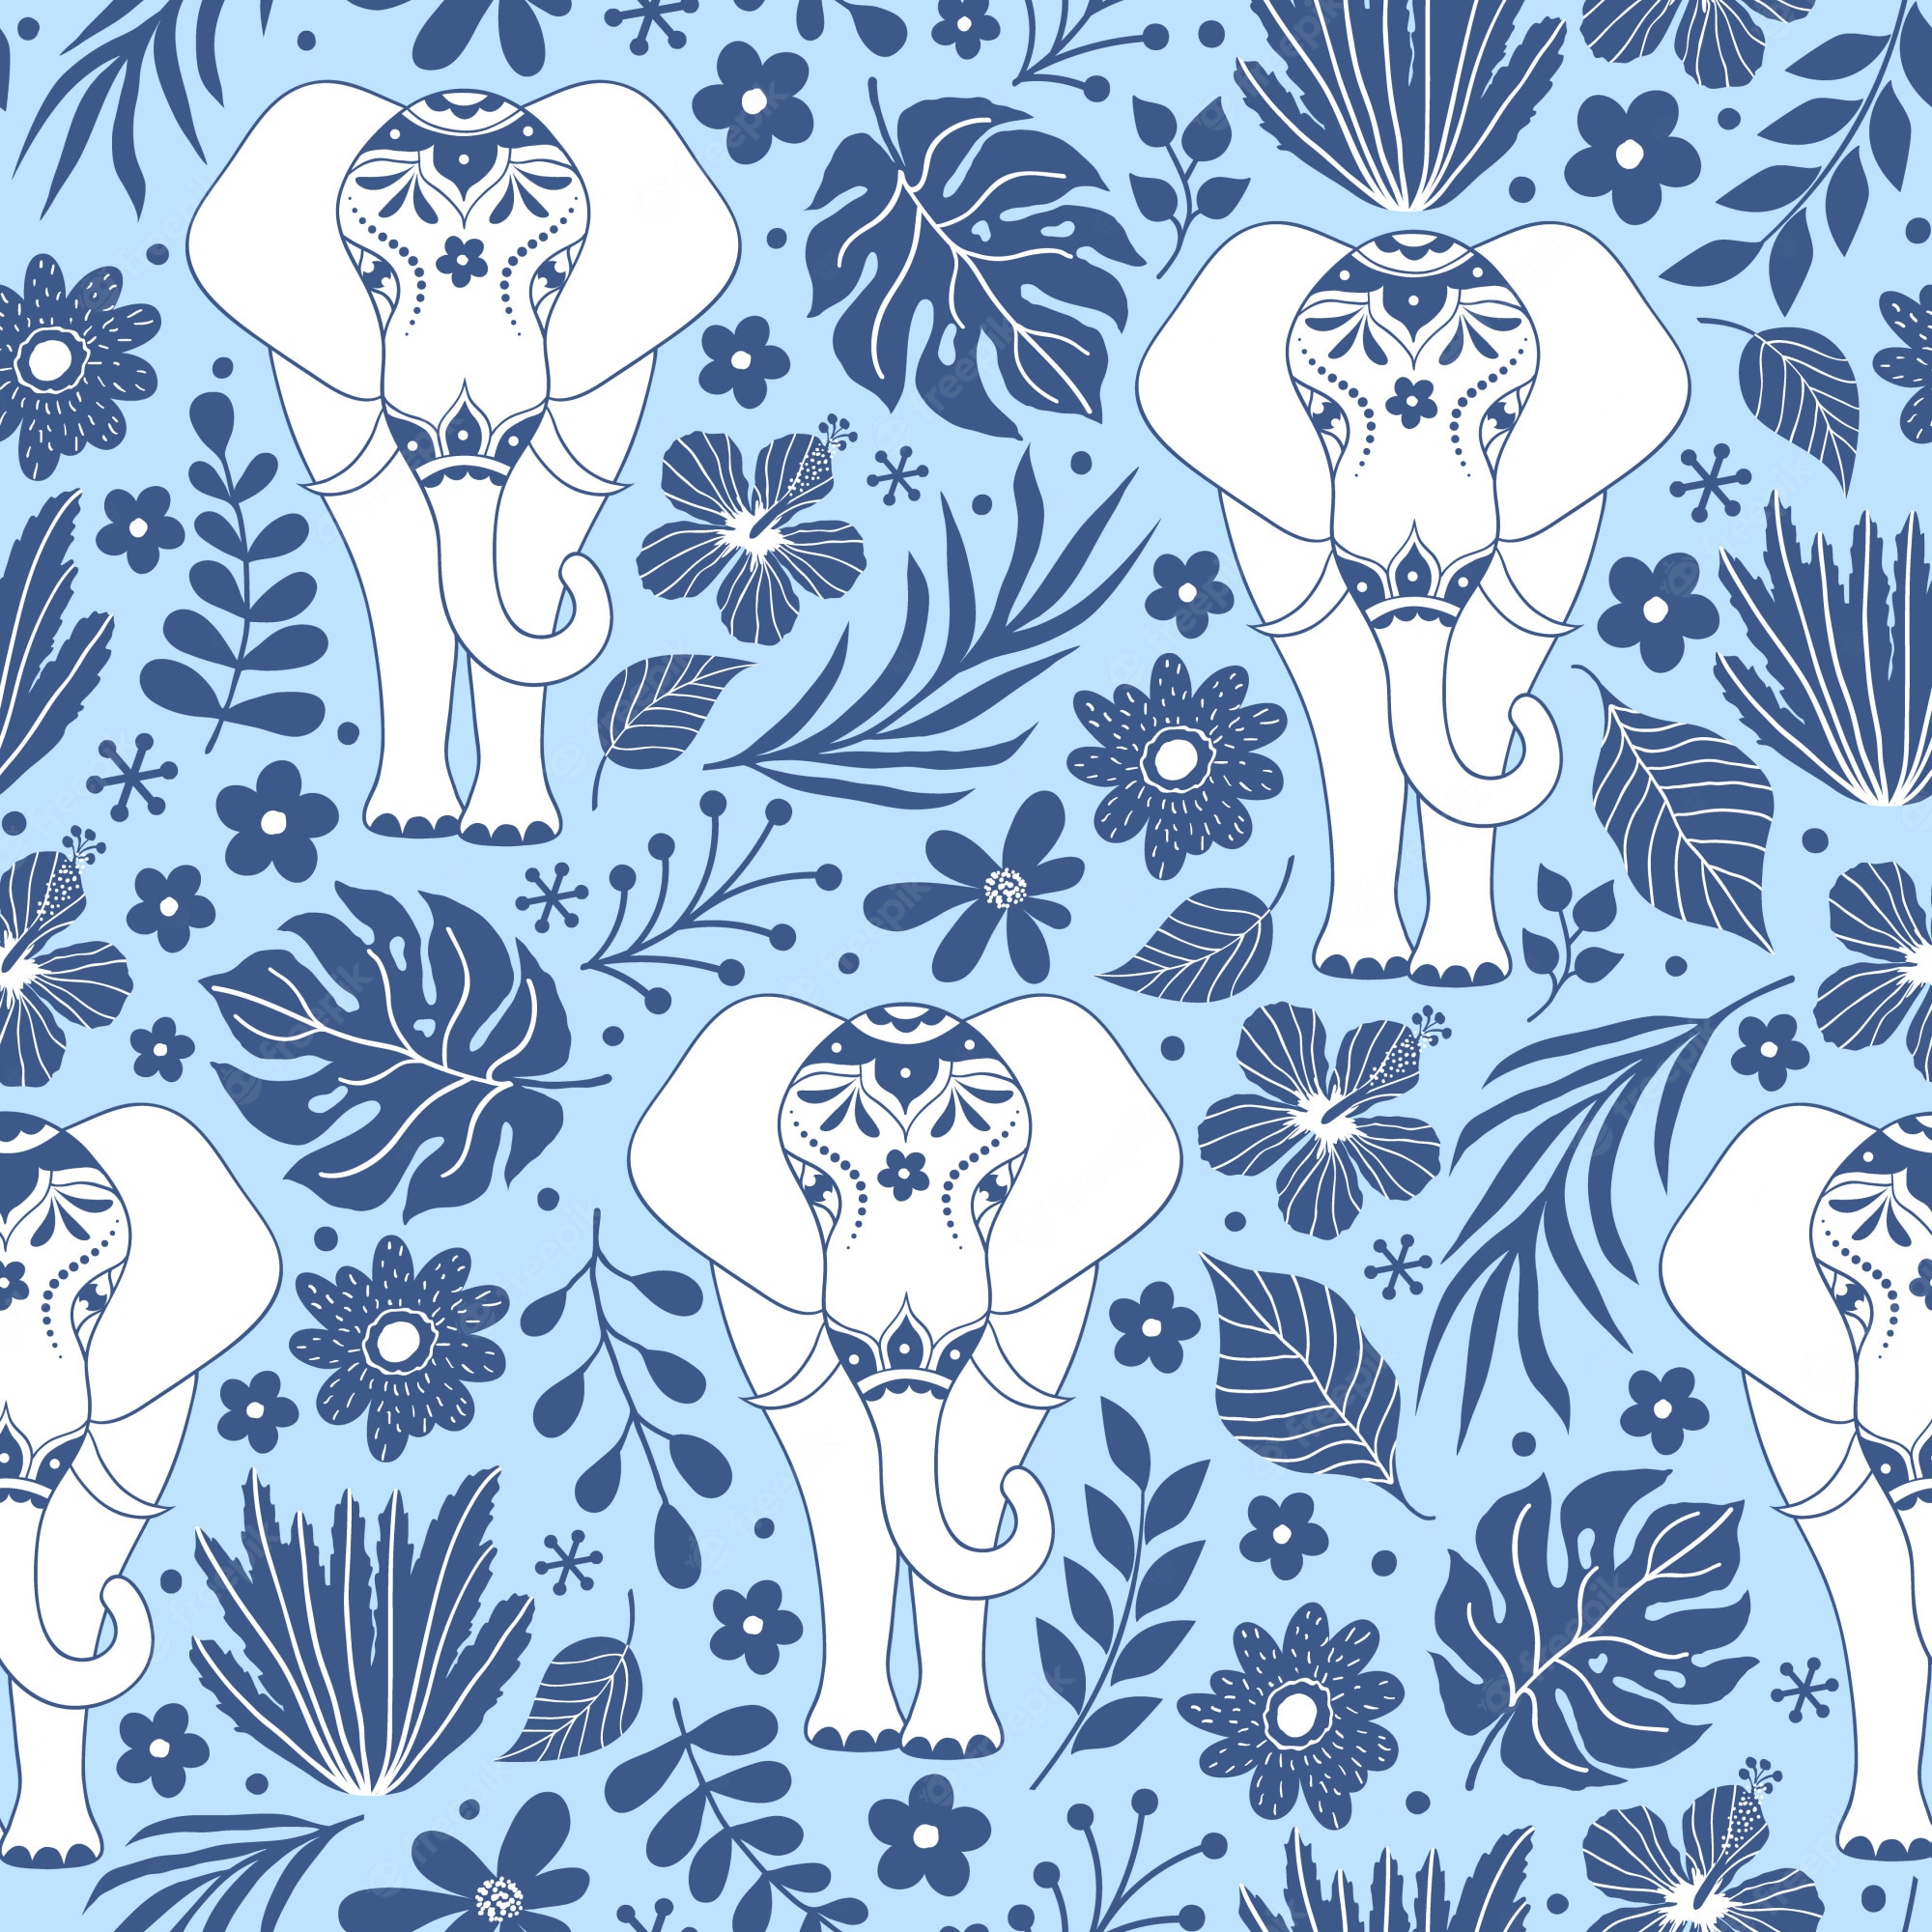 A blue and white elephant pattern - Elephant